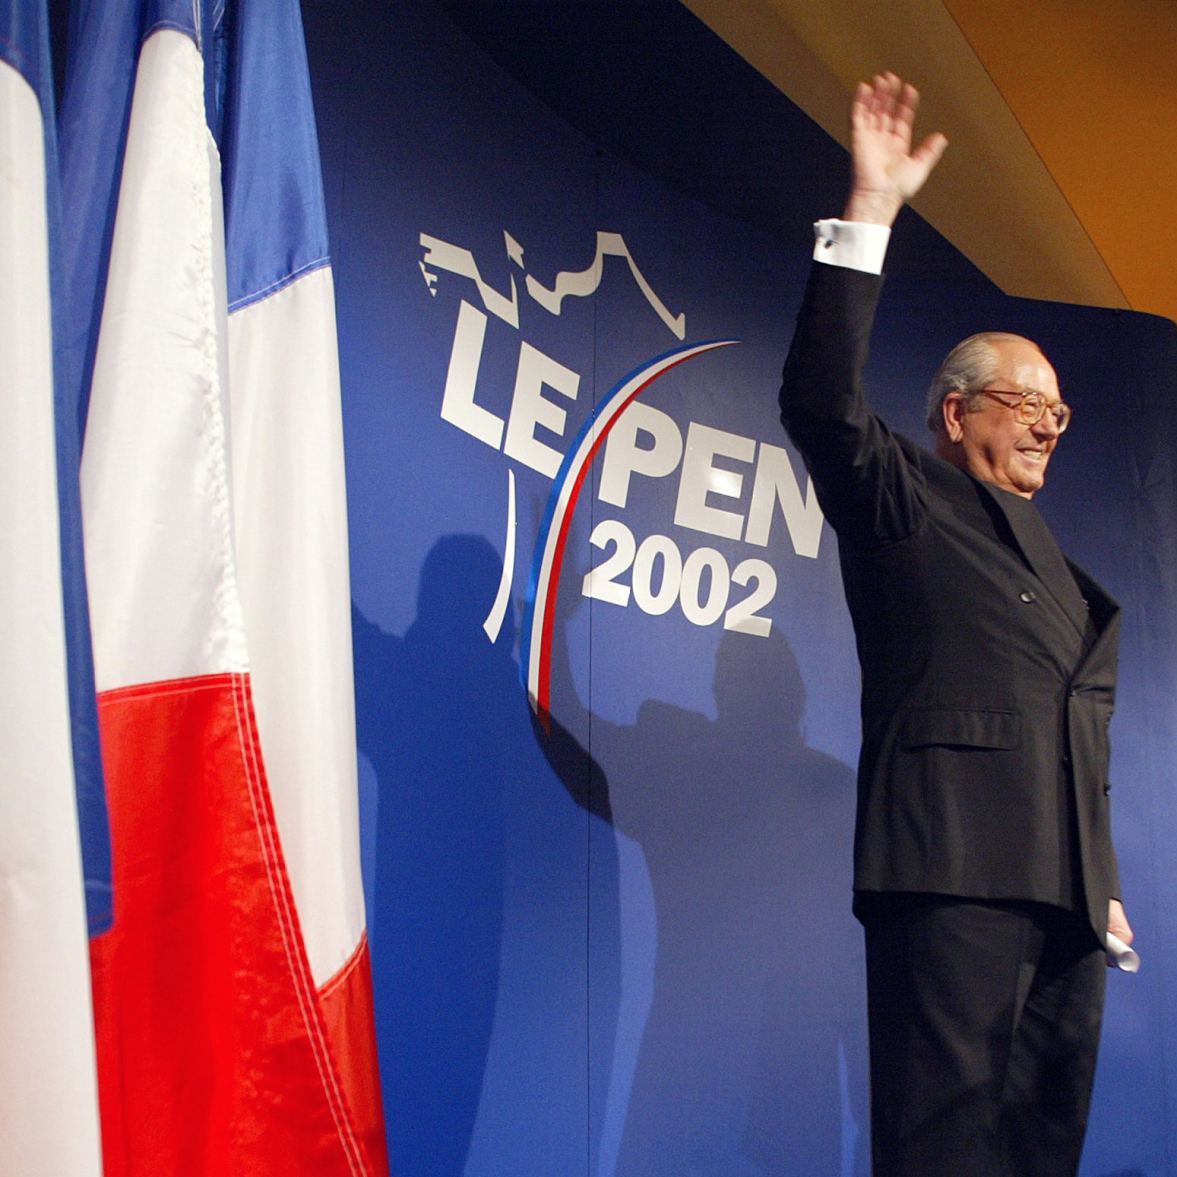 Marion Maréchal-Le Pen to quit politics: report – POLITICO